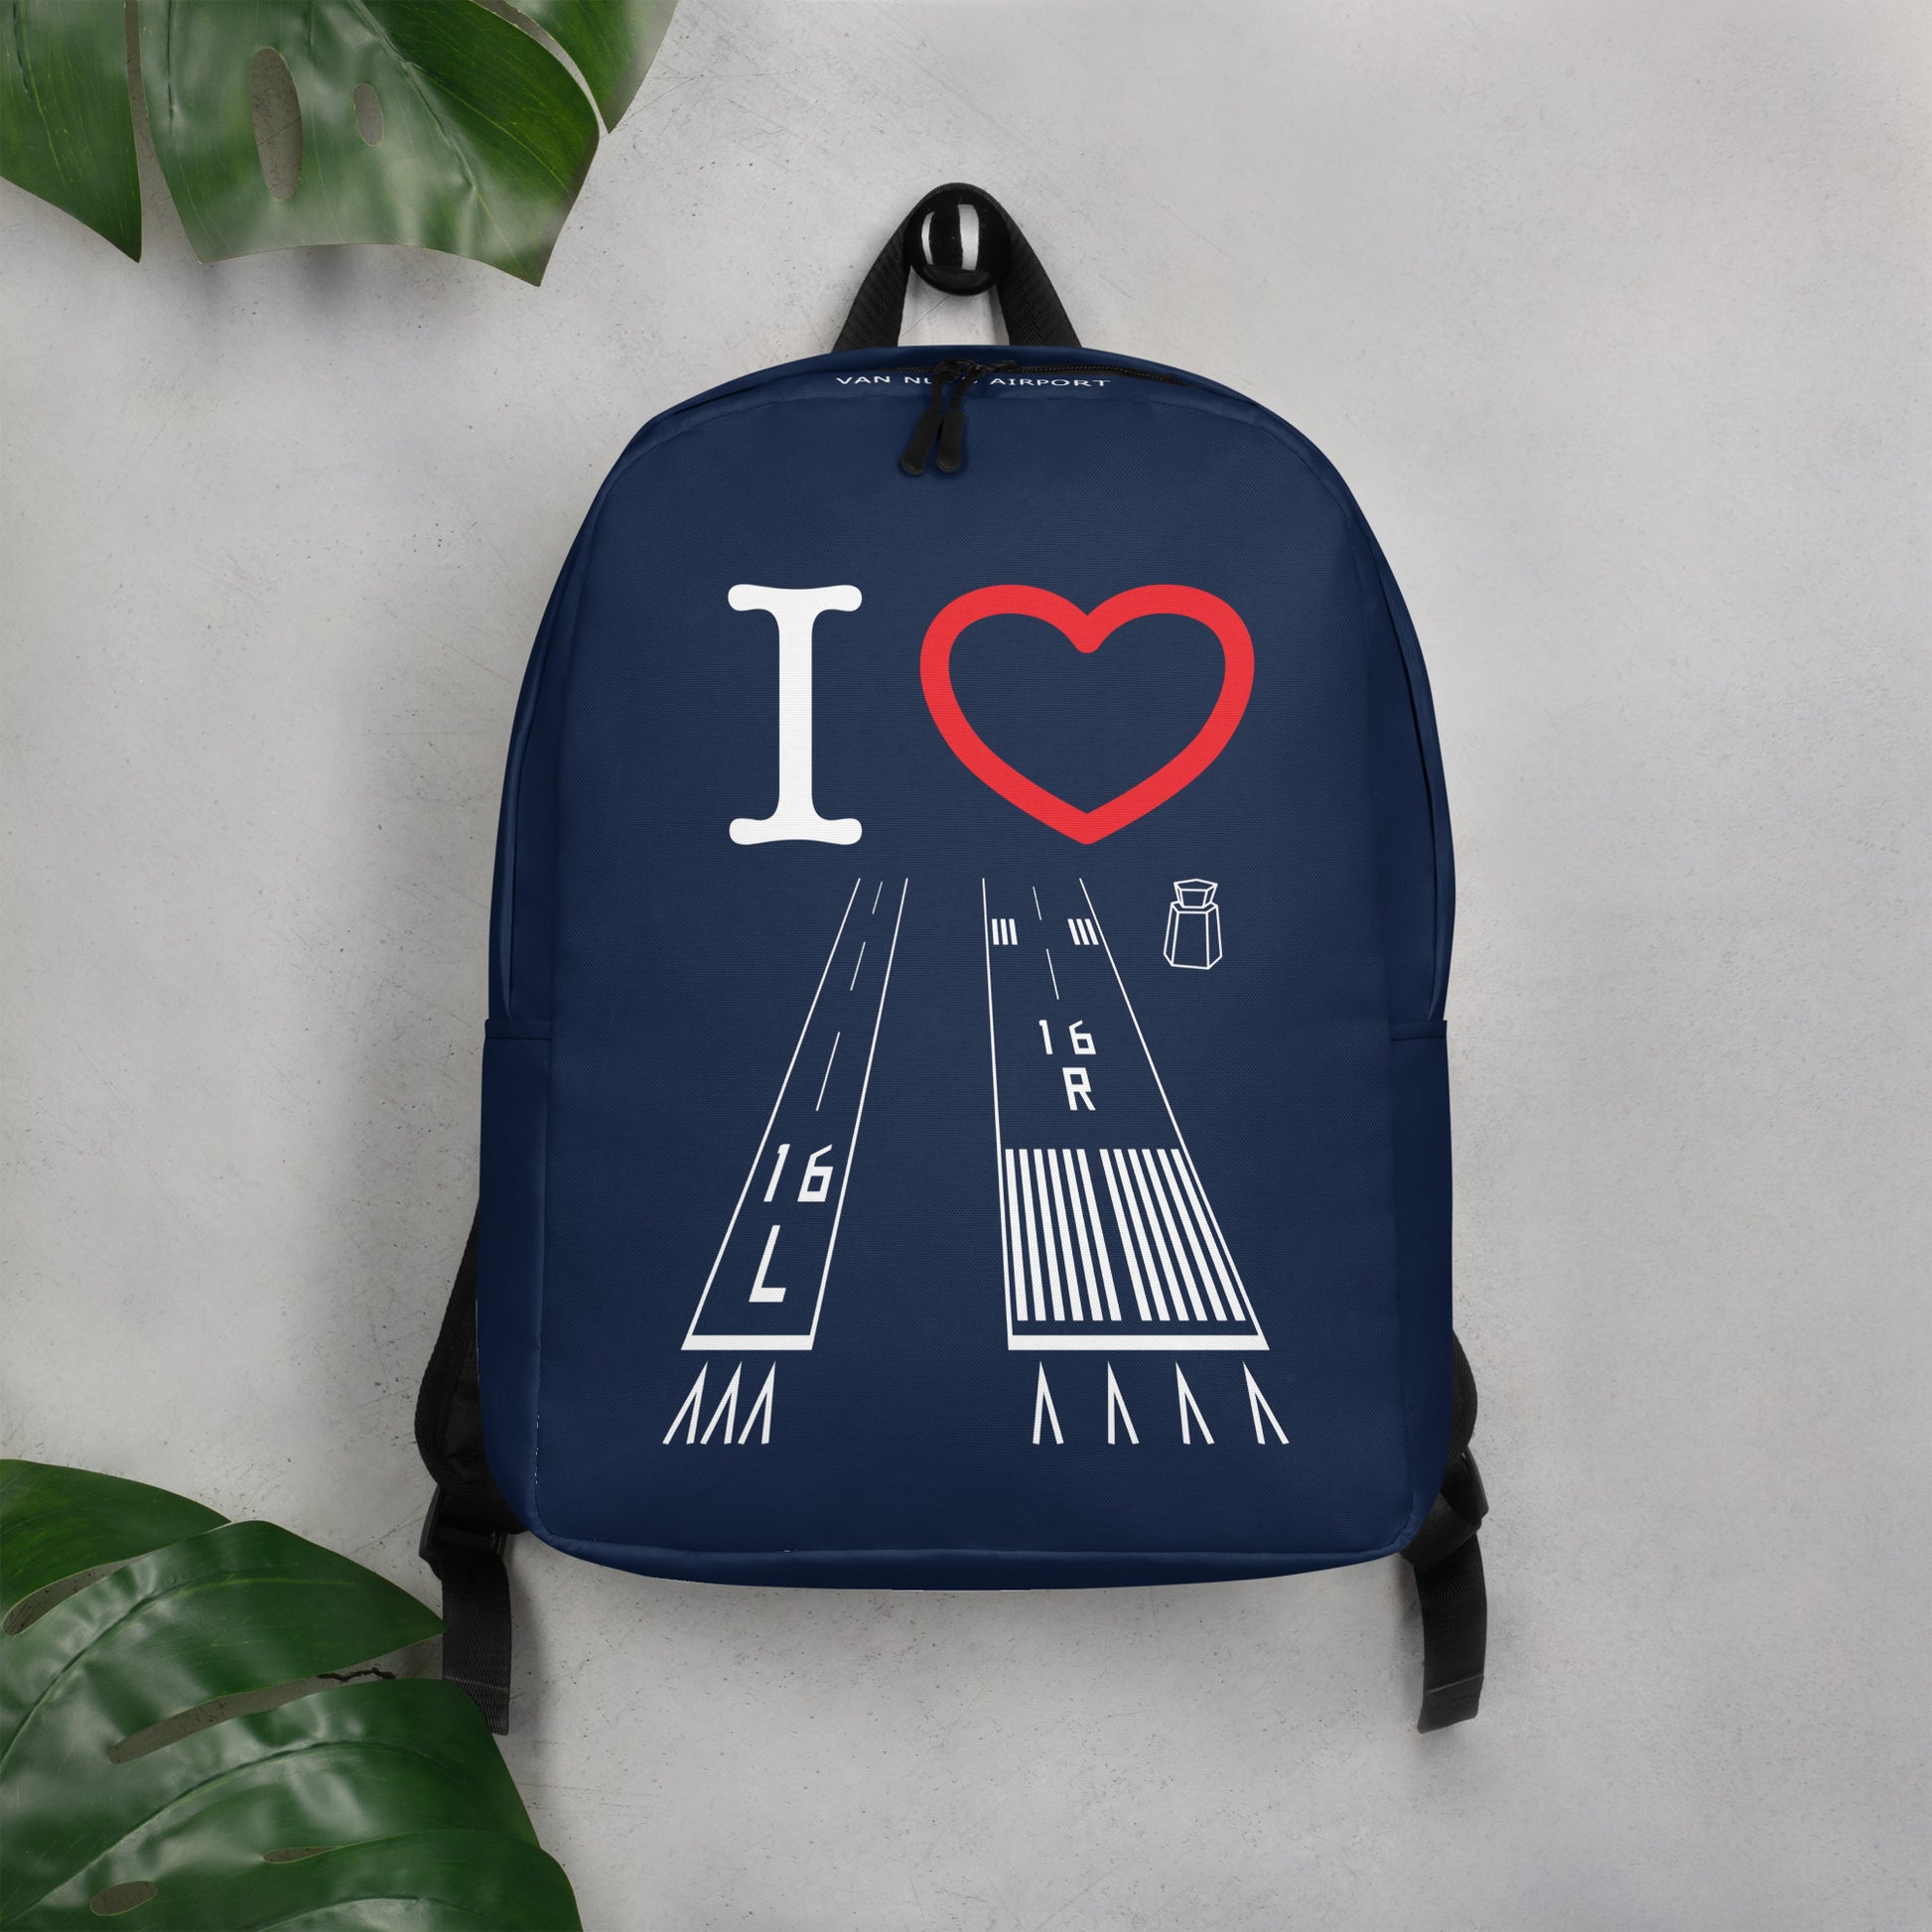 Van Nuys Airport Runways 16L / 16R - navy minimalist backpack